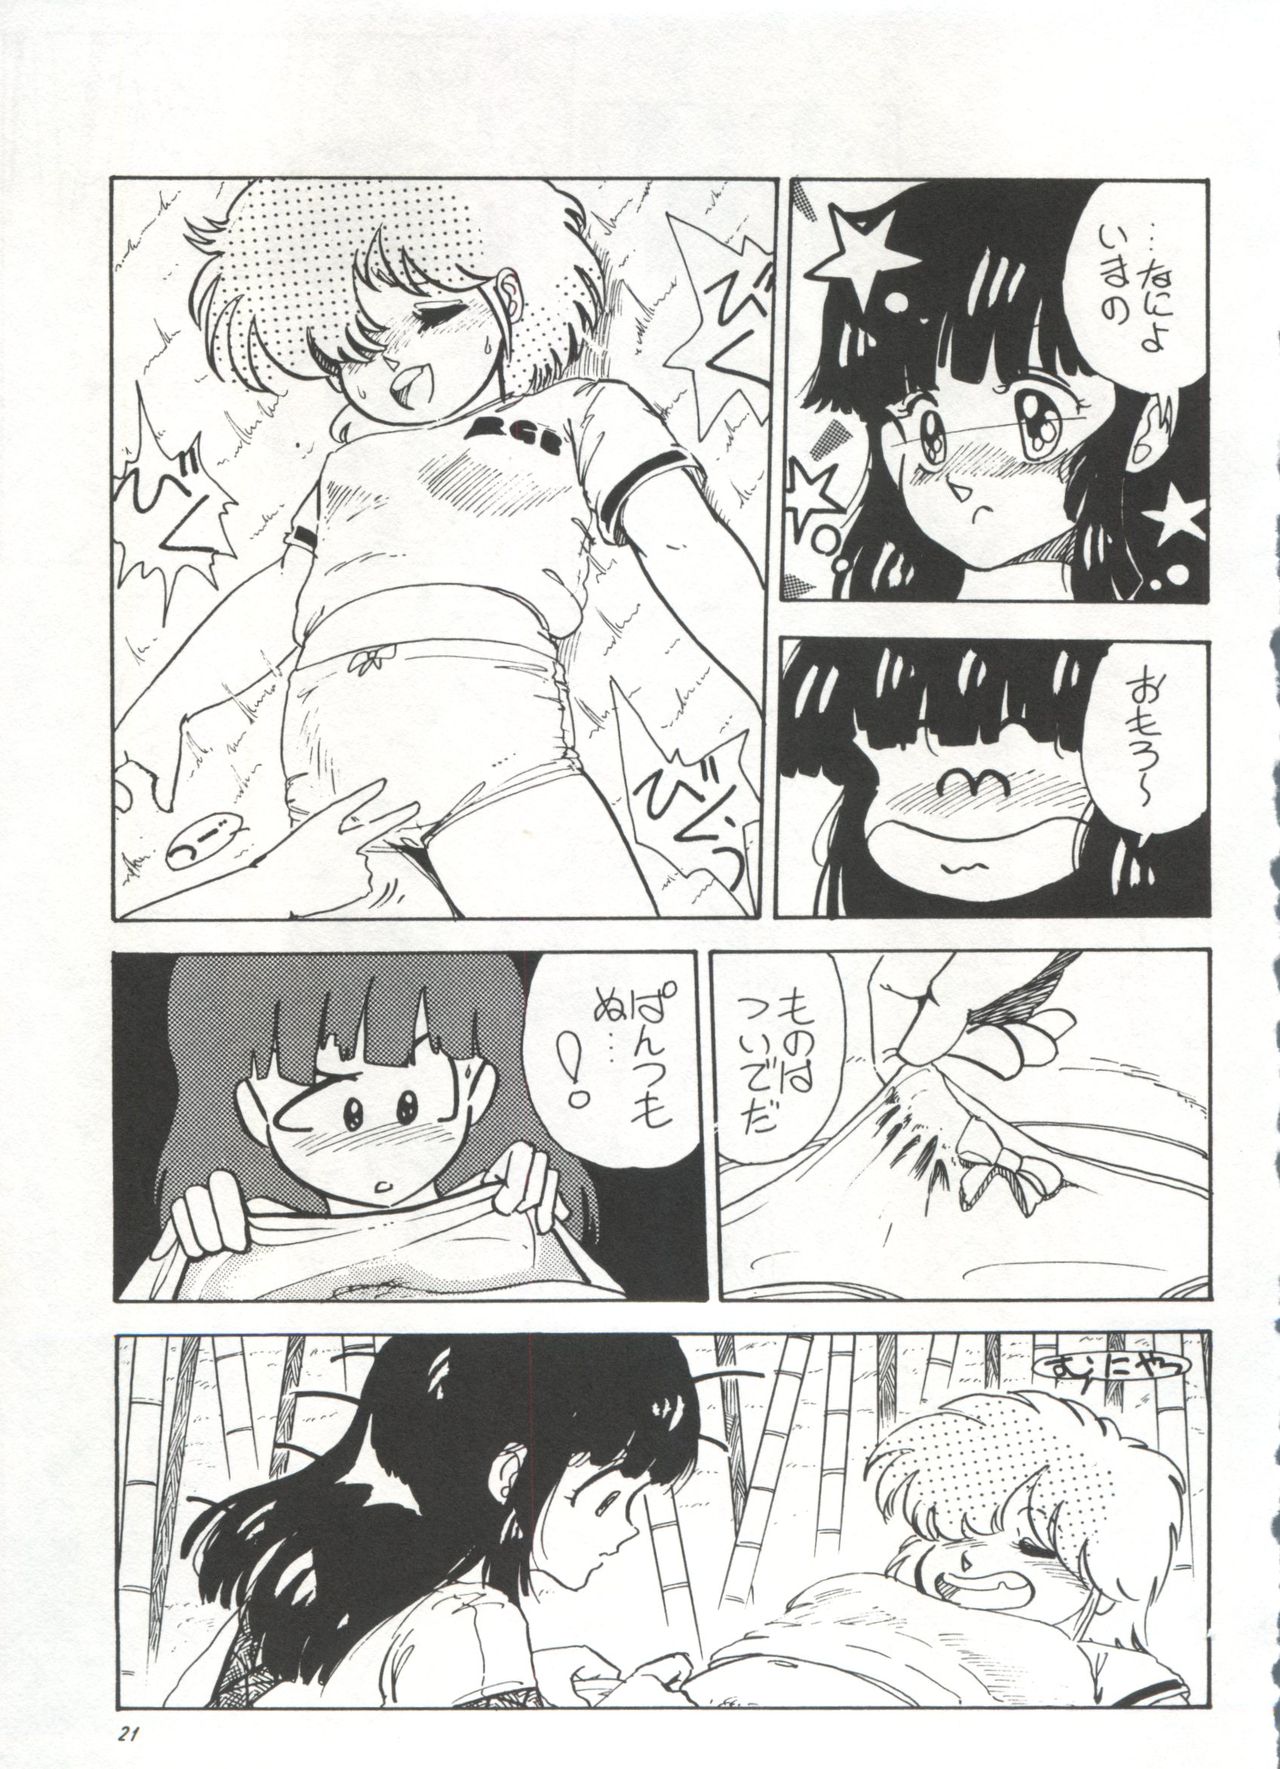 [Anthology] Bishoujo Shoukougun 1 Lolita Syndrome (Various) page 24 full